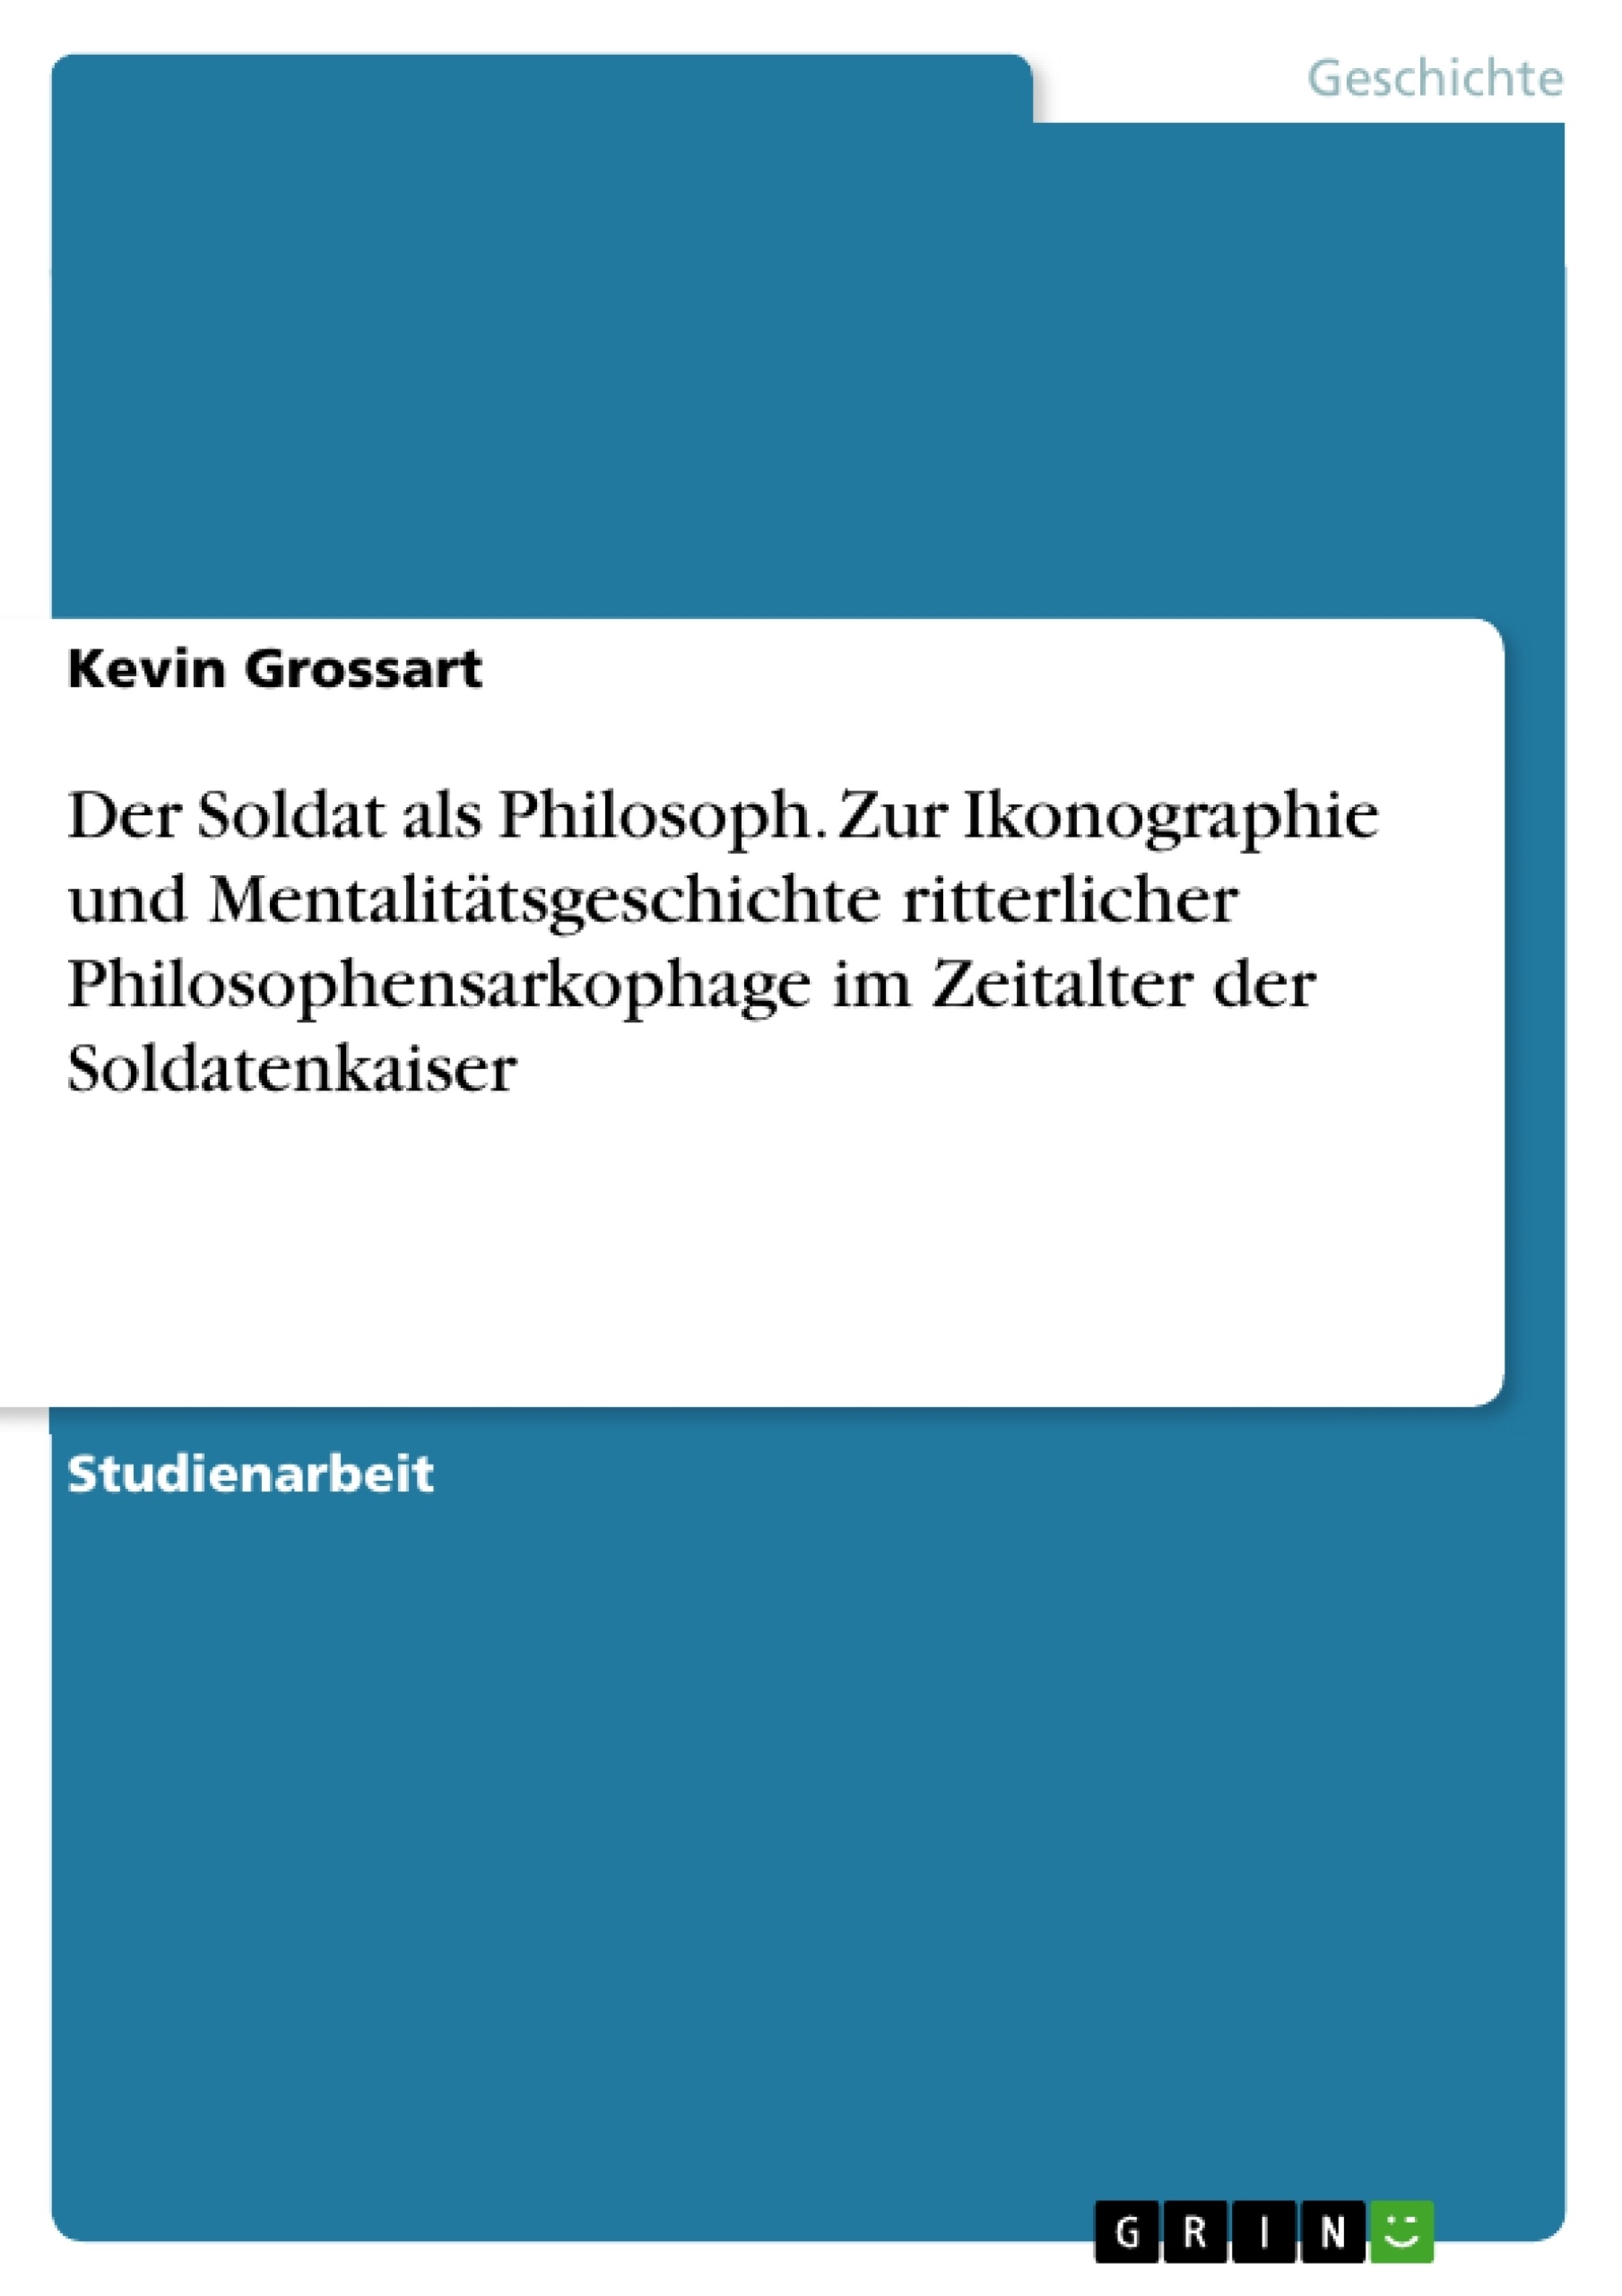 Title: Der Soldat als Philosoph. Zur Ikonographie und Mentalitätsgeschichte ritterlicher Philosophensarkophage im Zeitalter der Soldatenkaiser